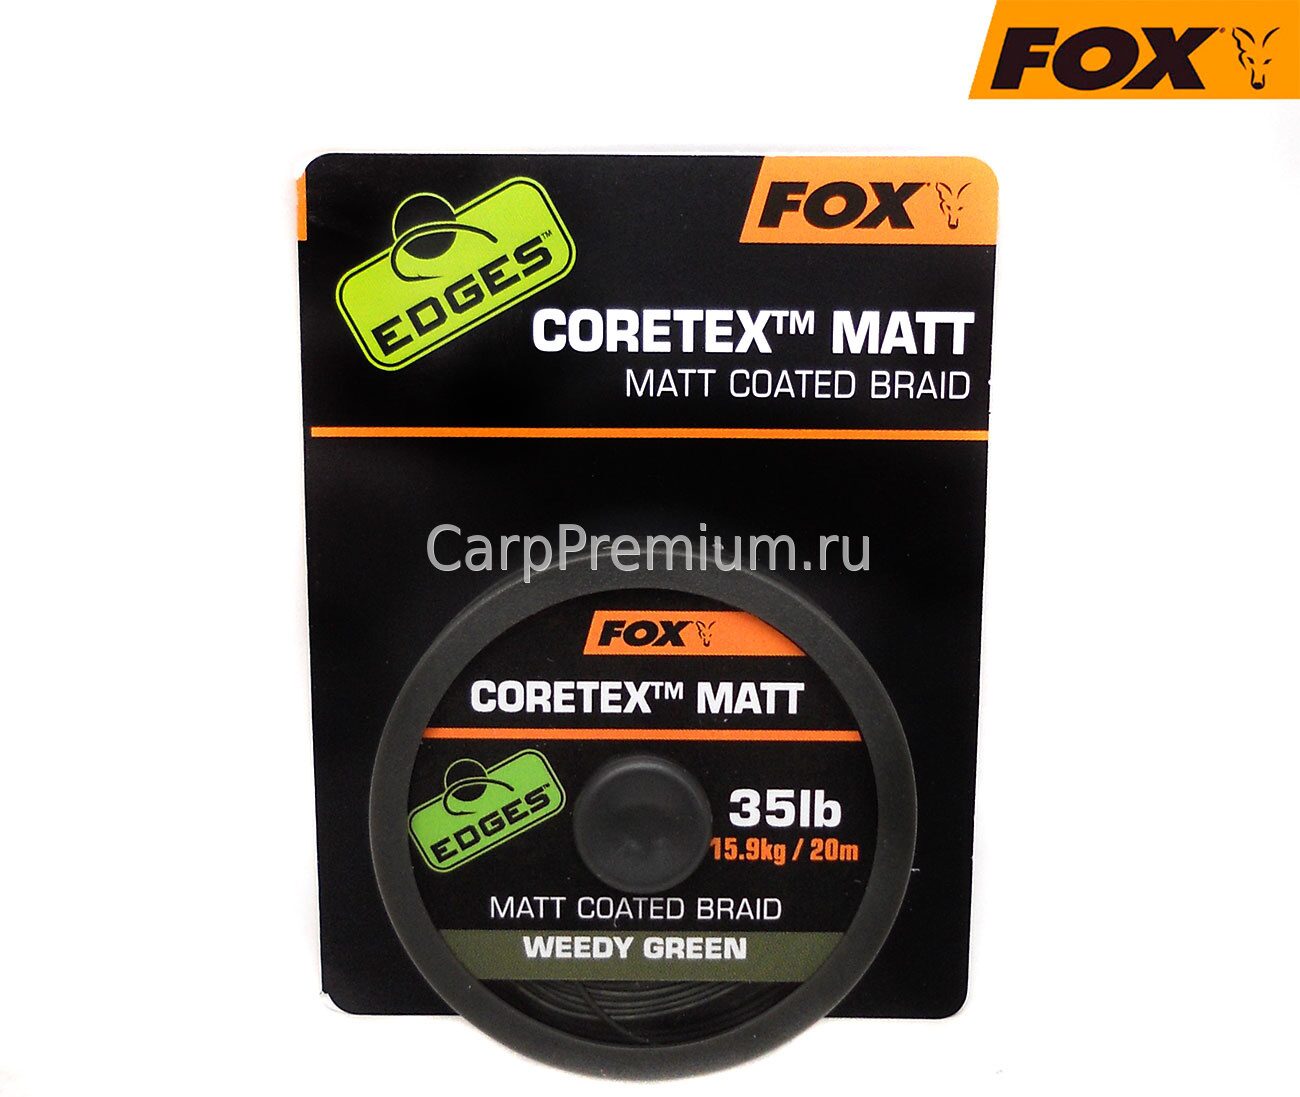 Поводковый материал в оплетке Зеленый 15.9 кг Fox (Фокс) - EDGES Coretex Matt - Weedy Green 35lb, 20 м